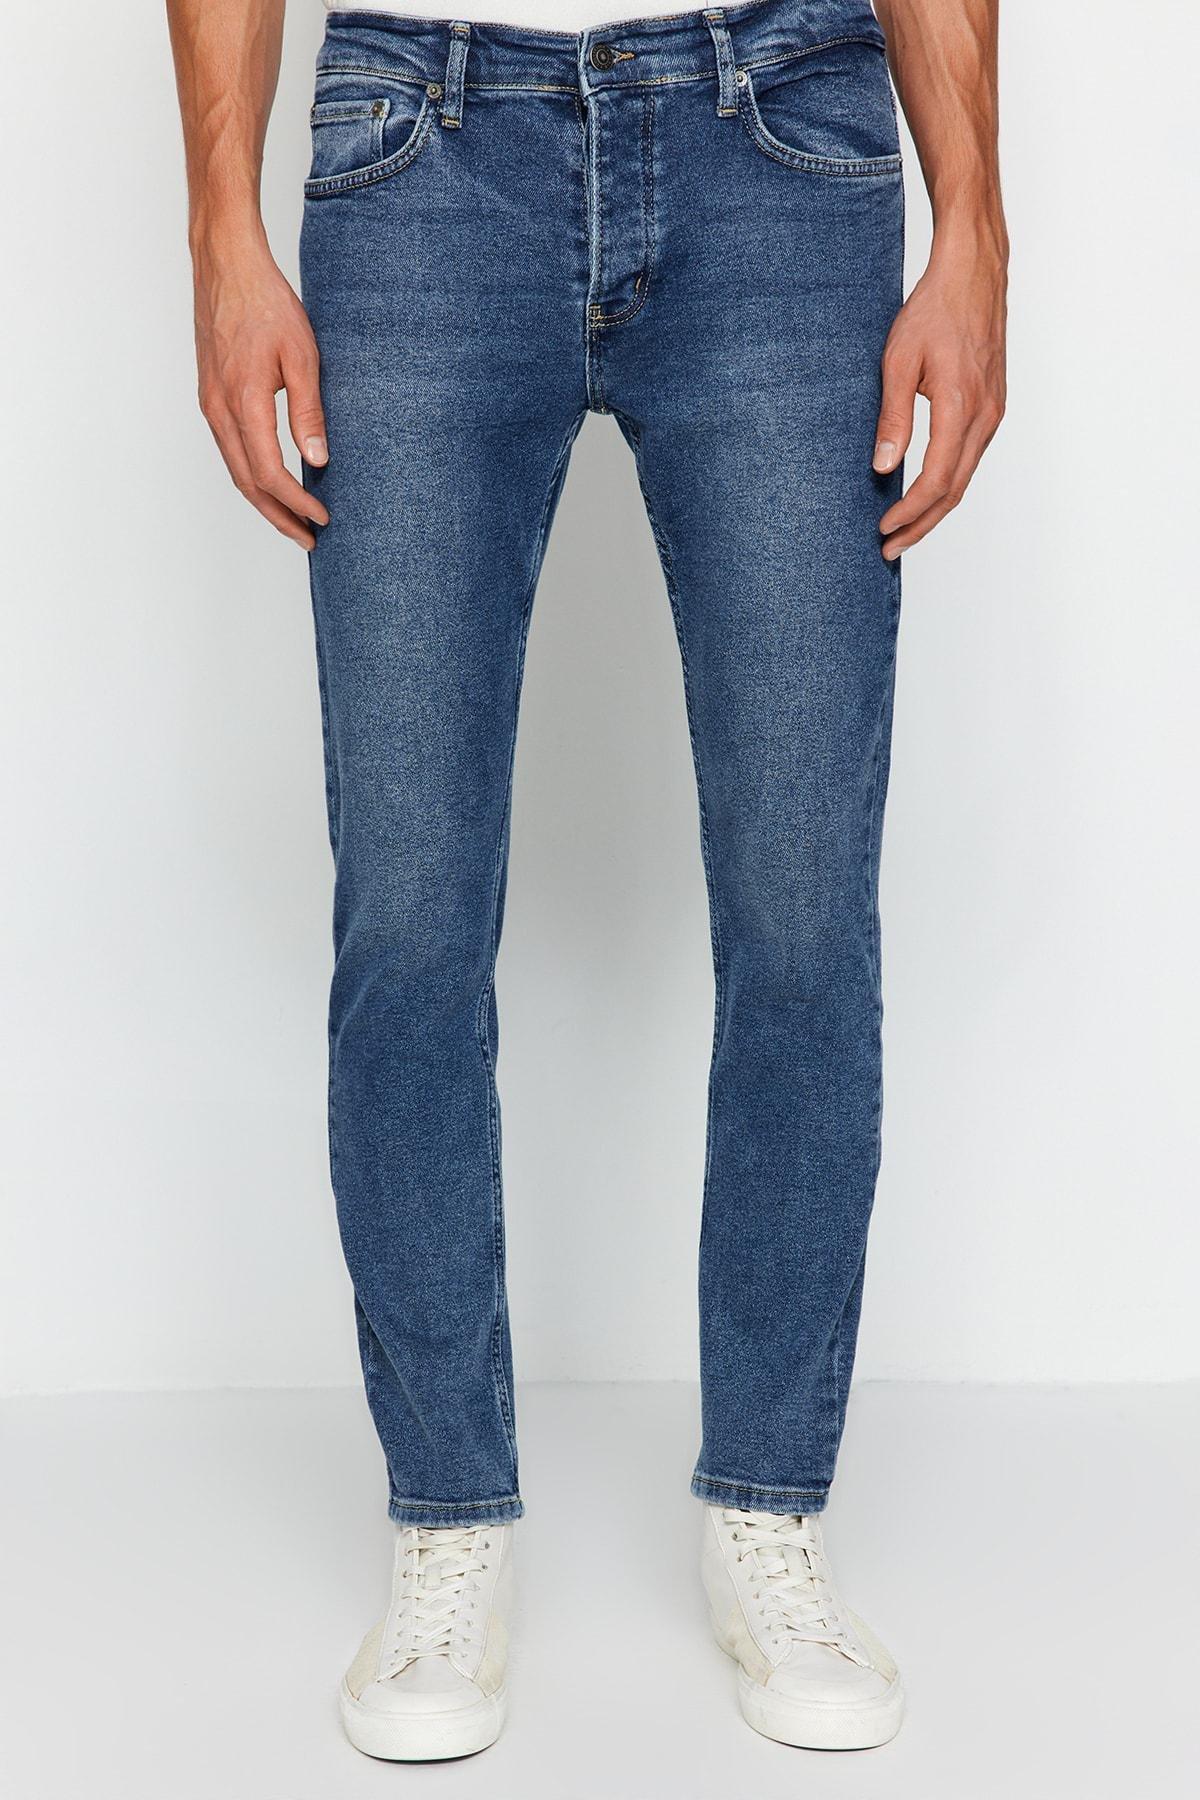 Trendyol - Navy Skinny Jeans